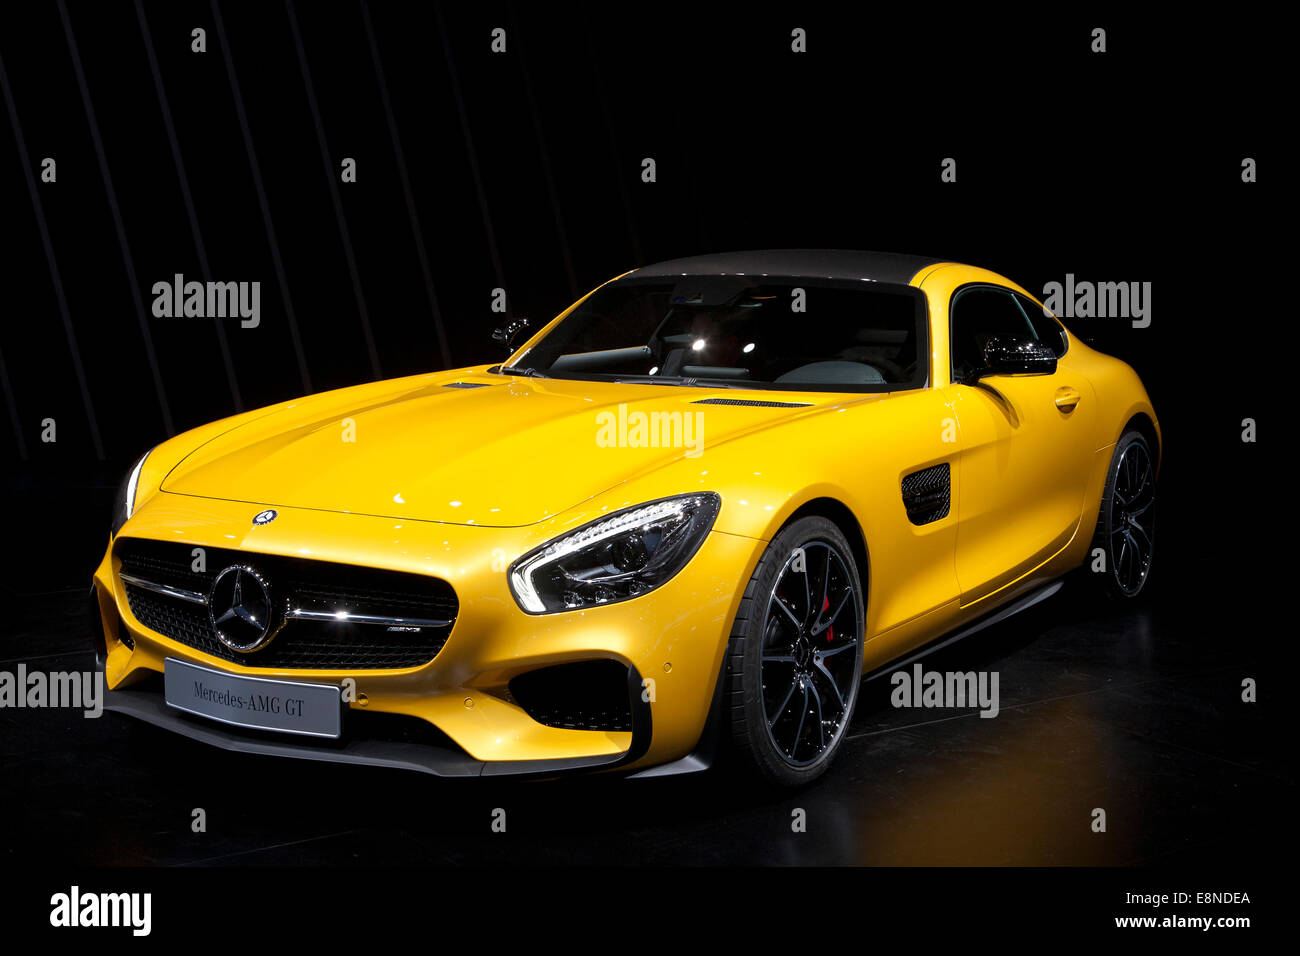 Mercedes AMG GT Paris Motor Show Mondial de l'Automobile 2014 Stock Photo